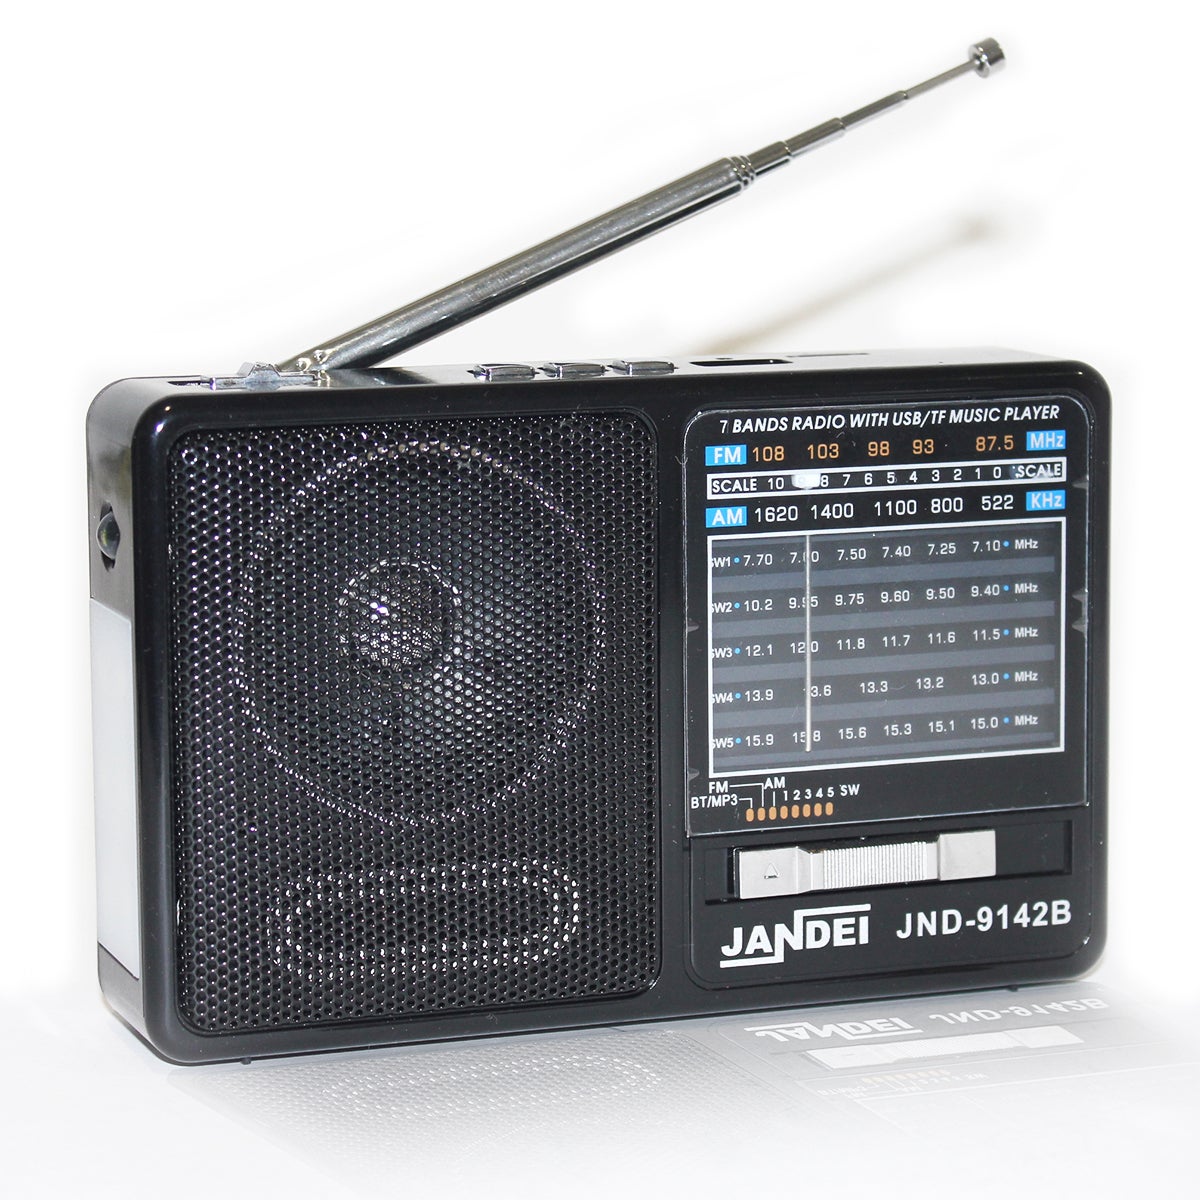 Desconocido Patológico respuesta Radio con batería Recargable, Bluetooth, FM/Am / SW1-5, con Linterna, Cable  USB Carga Incluido | Leroy Merlin